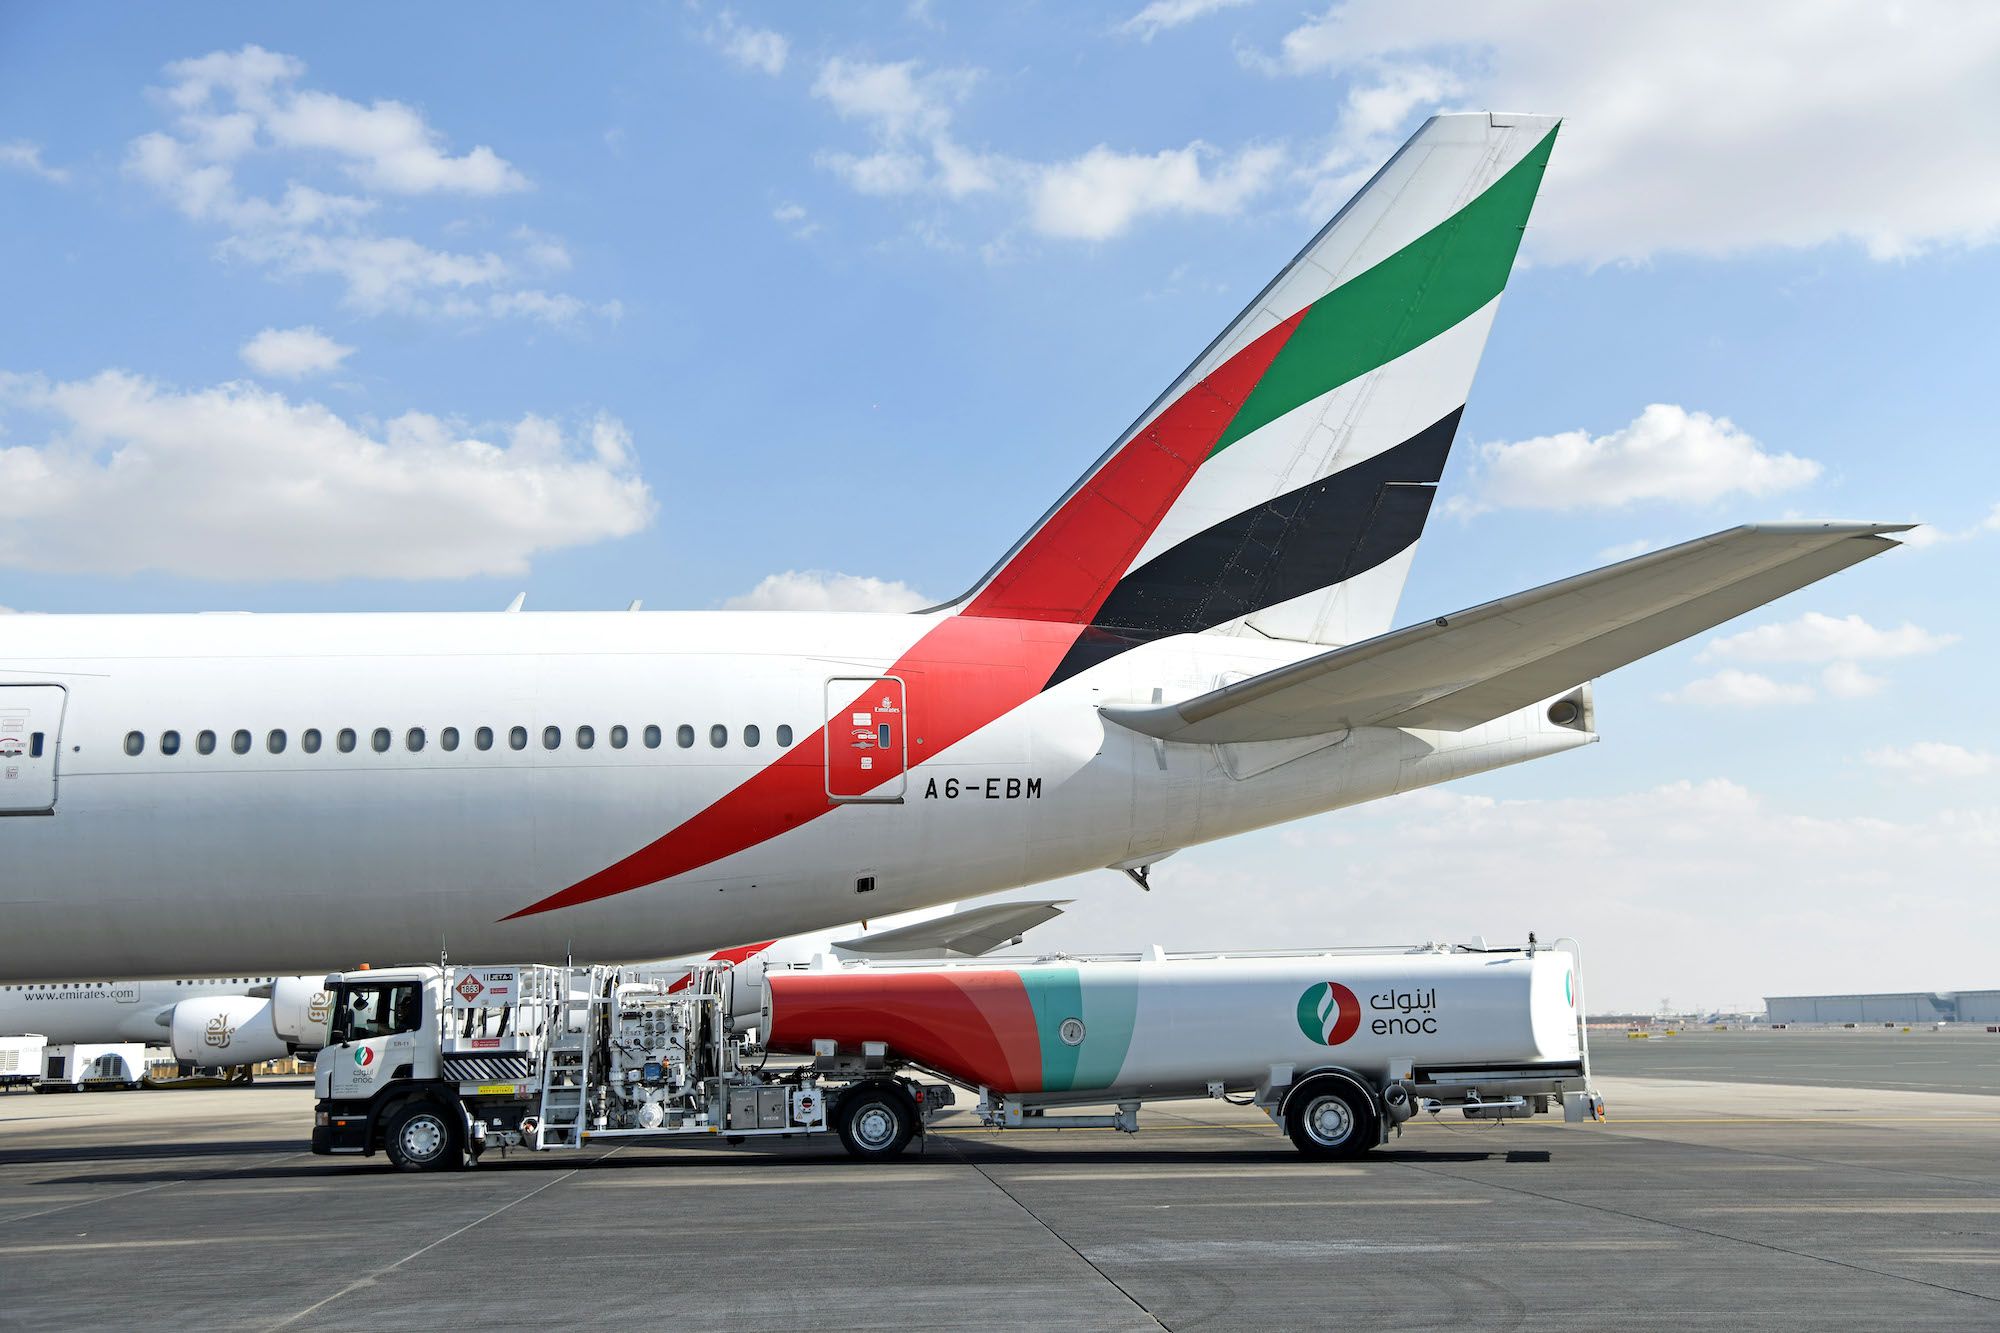 Emirates 777 refueling